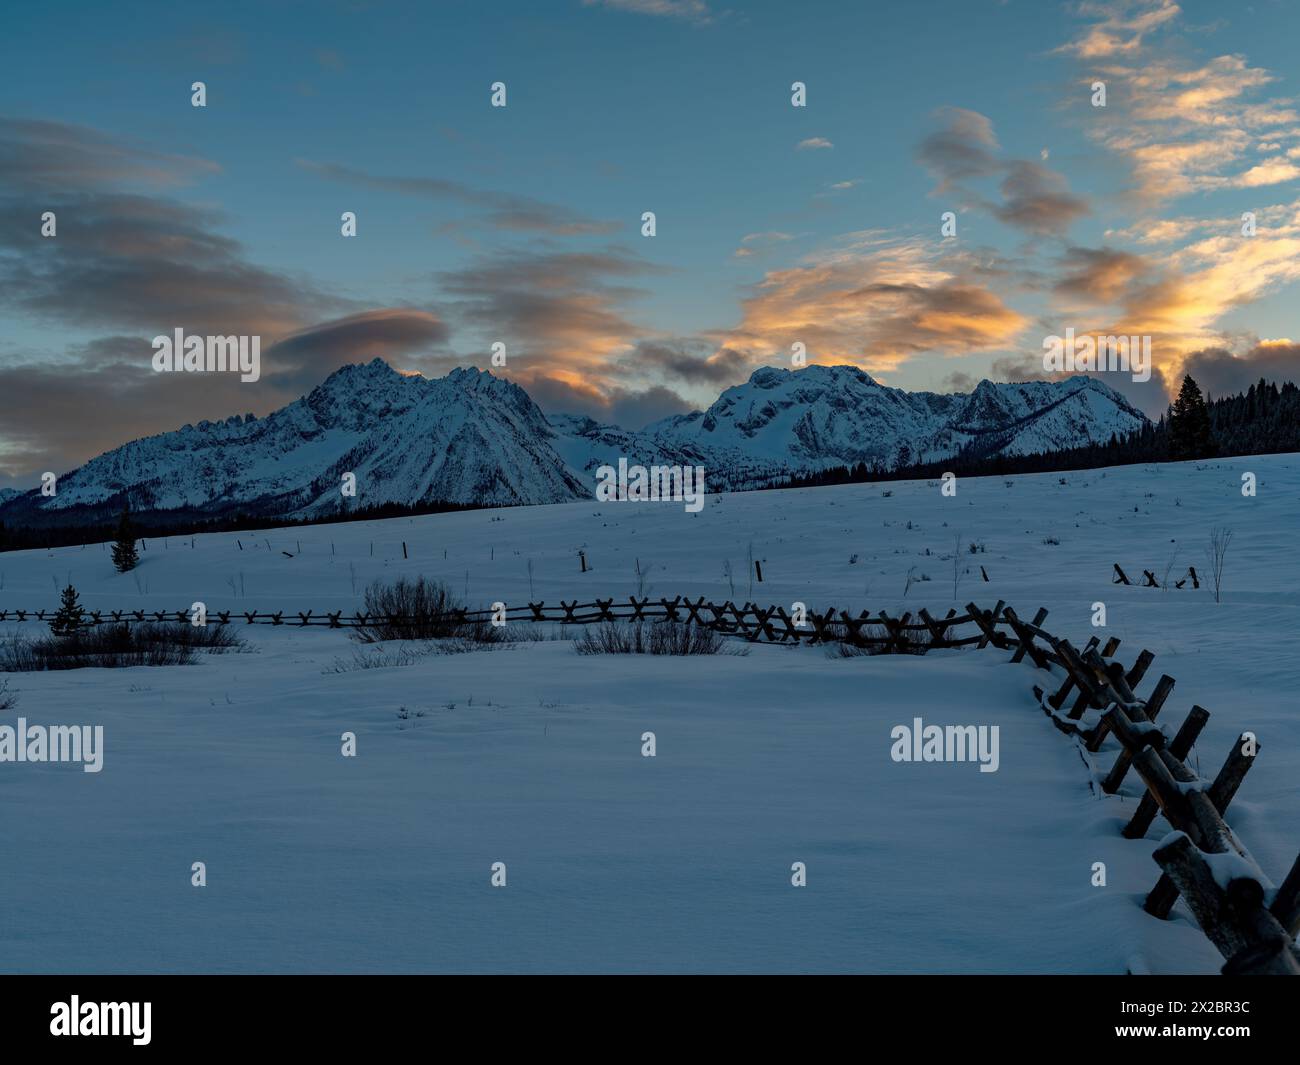 La neige et la barrière de poteau mènent à un beau coucher de soleil sur la chaîne de montagnes Banque D'Images